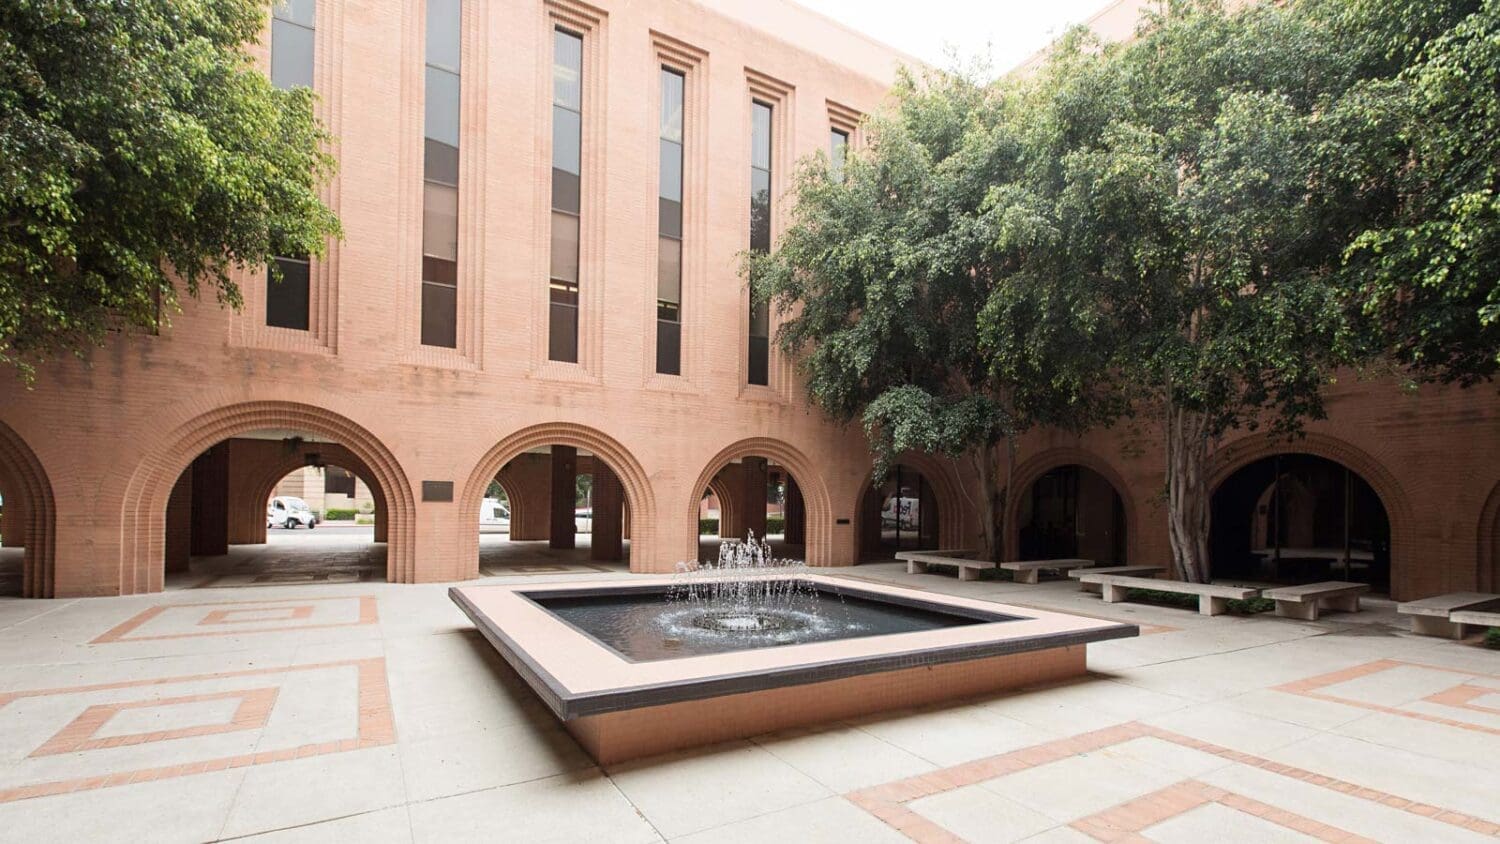 USC Leonard Davis courtyard and fountain